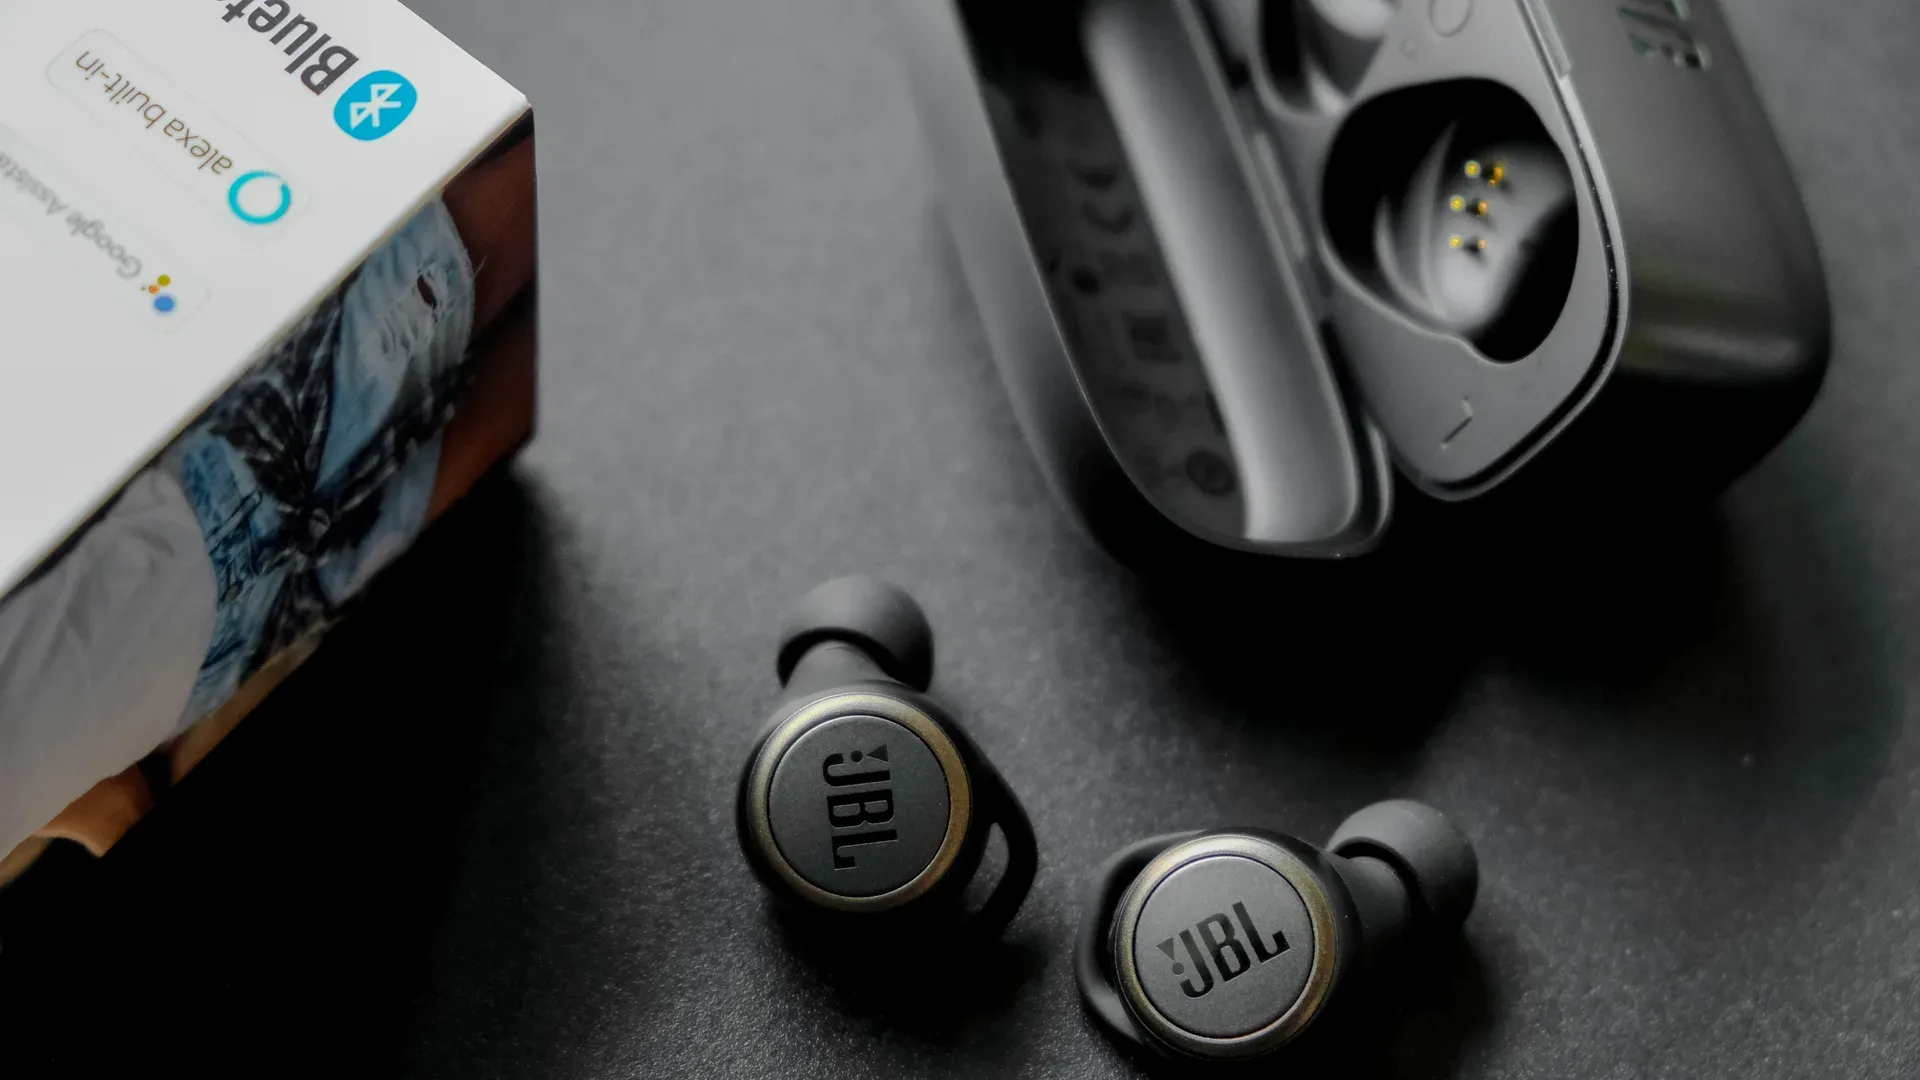 Fone de ouvido Bluetooth JBL: veja sete opções para comprar em 2021